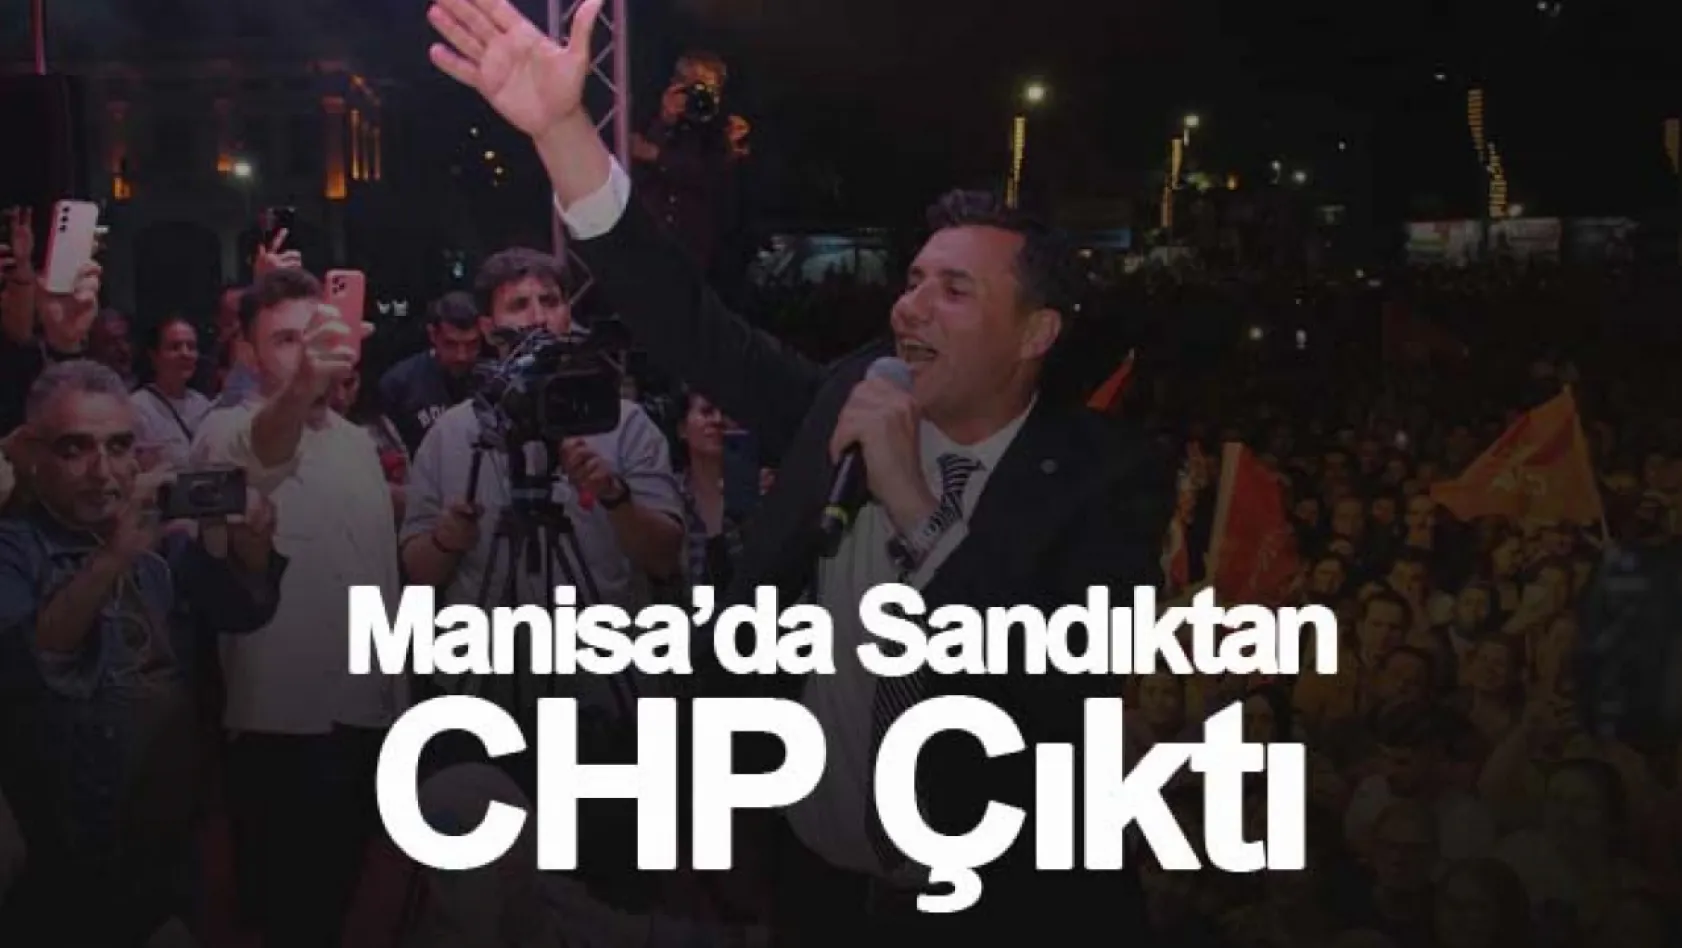 Manisa'da sandıktan CHP çıktı